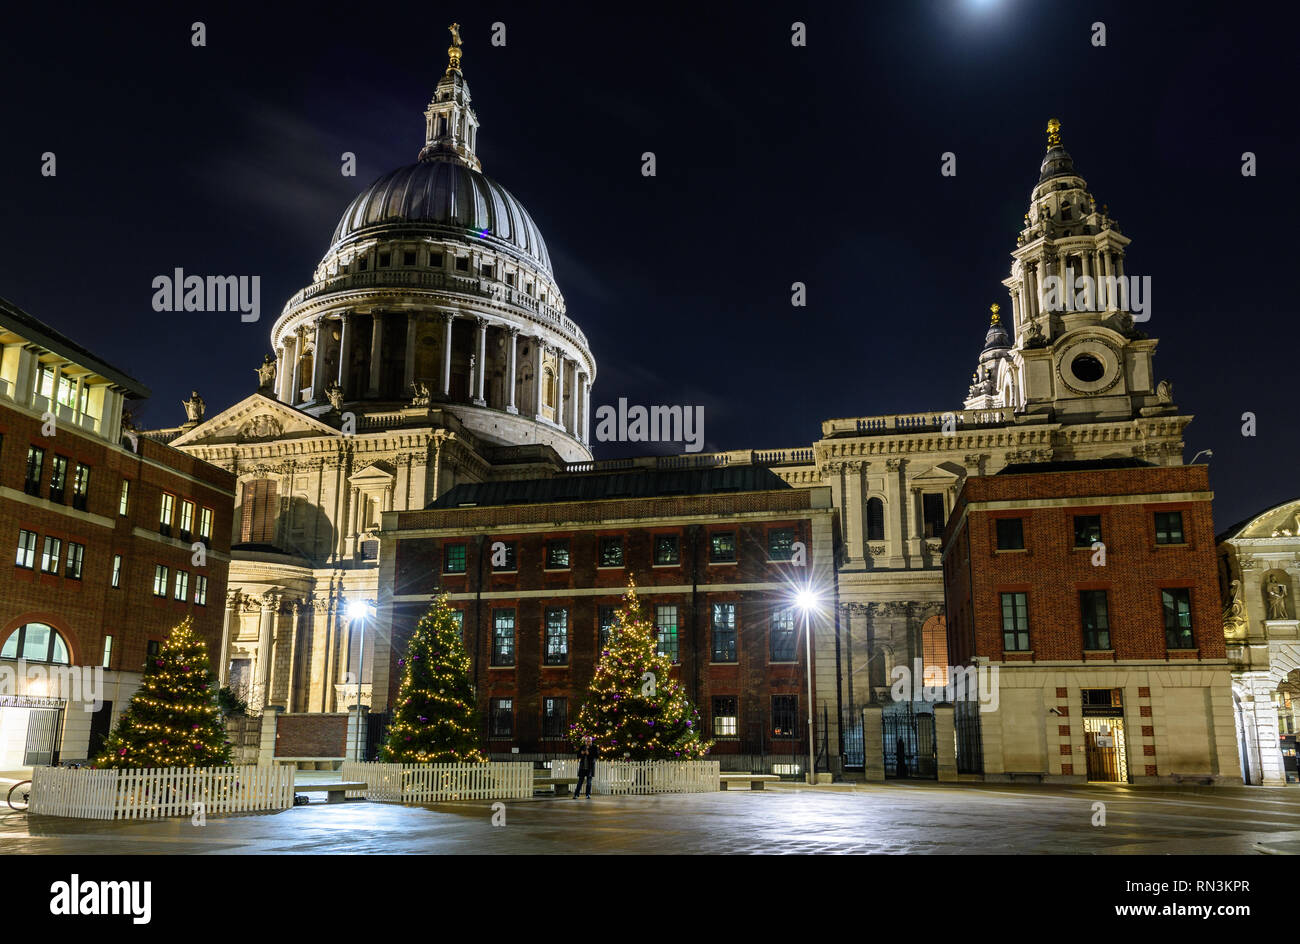 London, England, UK - Dezember 17, 2018: Weihnachtsbäume schmücken Paternoster Square unter der Kuppel der St. Paul's Cathedral in der City von London. Stockfoto